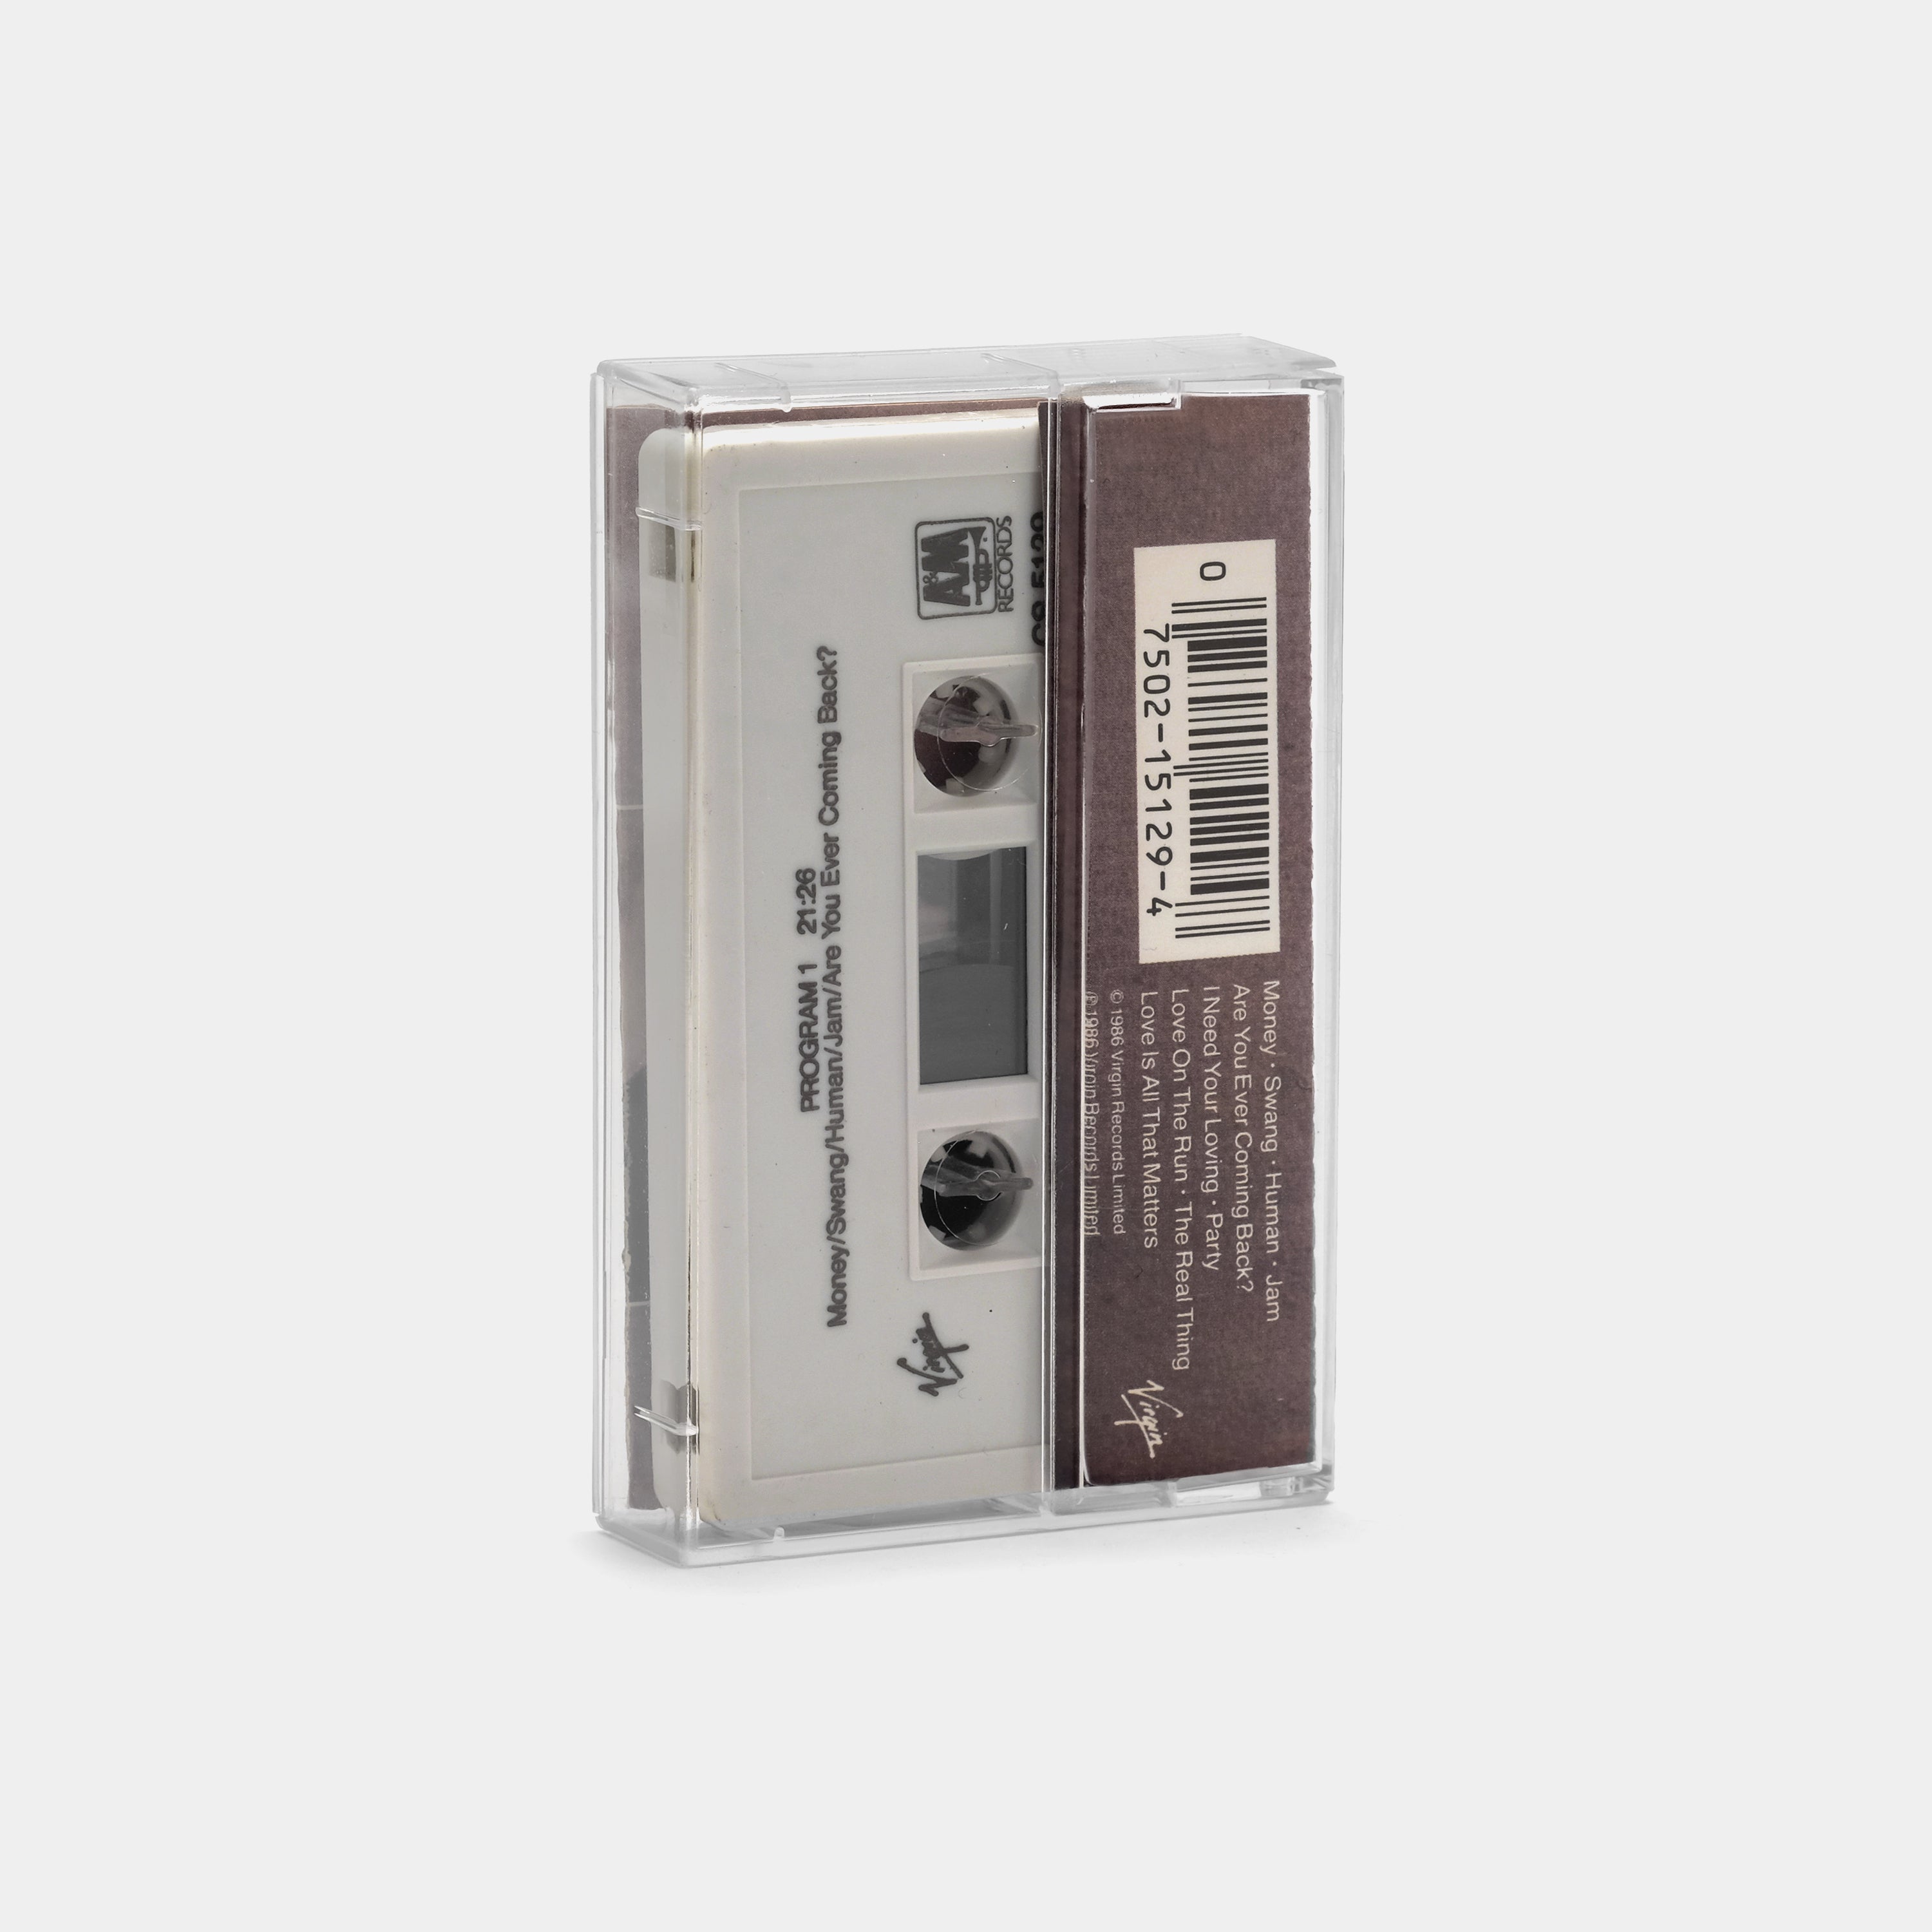 The Human League - Crash Cassette Tape